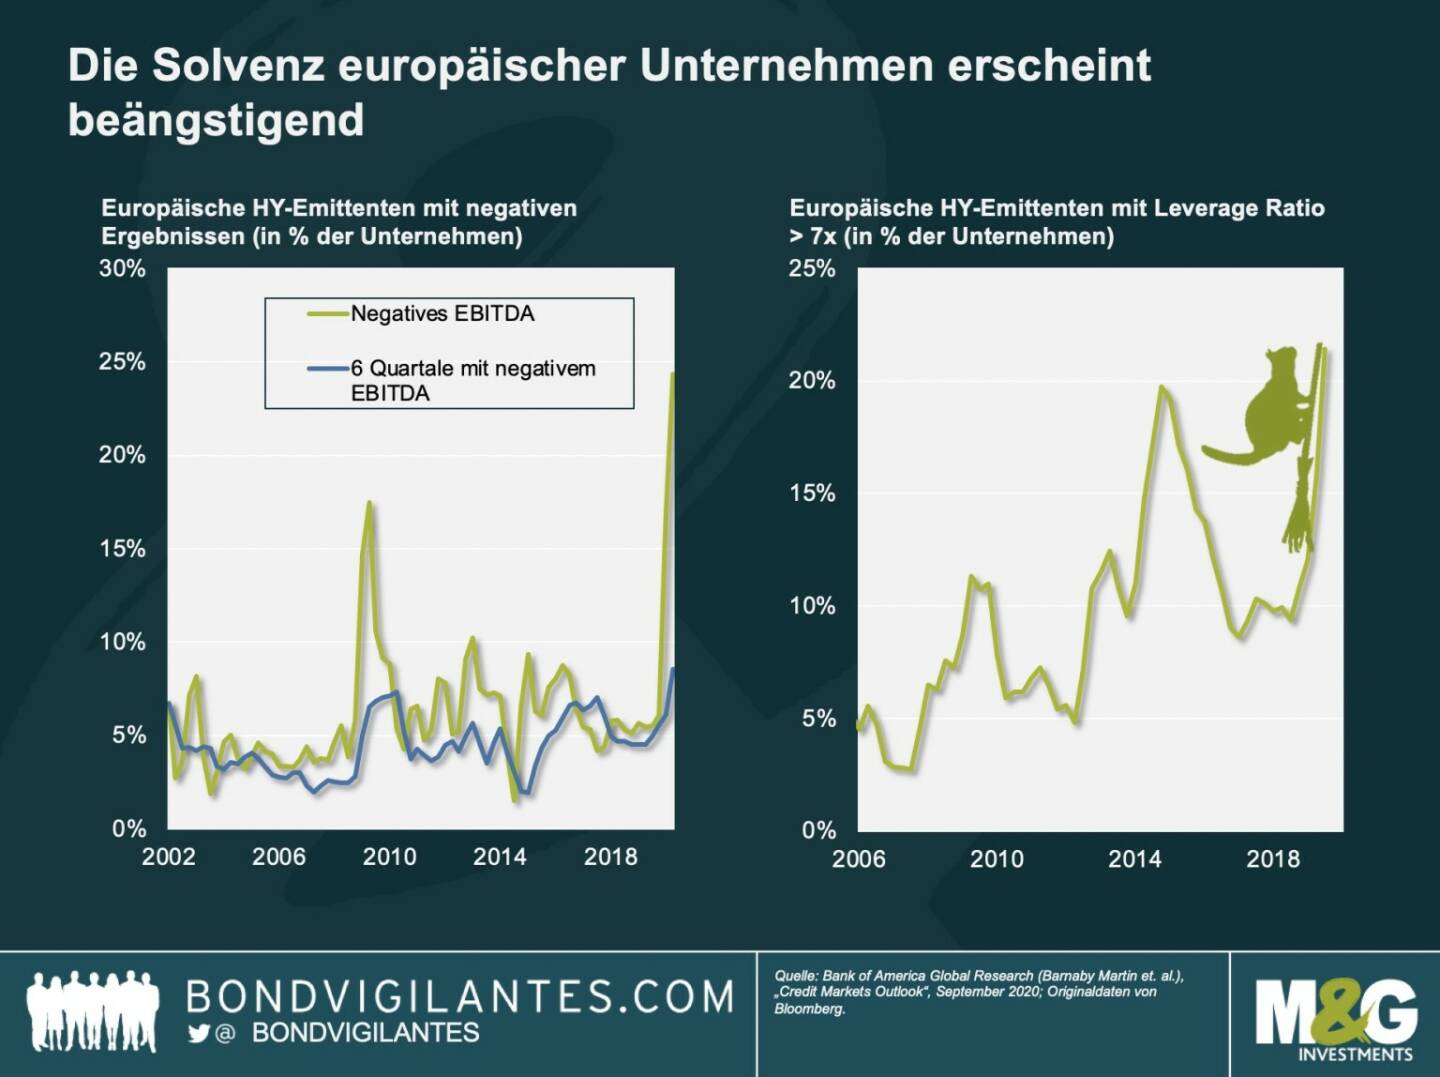 Hochzinsanleihen: Solvenz zum Fürchten - Die nächste gespenstische Grafik zeigt, in welch gefährlichem Fahrwasser sich die Zahlungsfähigkeit europäischer Emittenten von Hochzinsanleihen bewegt. Vielen Unternehmen dieses Segments ist es in diesem Jahr zwar gelungen, ihre Liquidität aufrechtzuerhalten, doch ihre Bilanzen sind anfällig. Und da inzwischen die Ausgangsbeschränkungen in ganz Europa wieder verschärft werden, ist es angesichts der dürftigen Gewinne und hohen Verschuldung vieler Unternehmen durchaus denkbar, dass dem europäischen Hochzinsmarkt eine neue Schwächephase bevorsteht.

Der Renditeaufschlag für den europäischen High-Yield-Index liegt aktuell bei etwa 400 bis 500 Basispunkten – im Vergleich zu einem zwischenzeitlichen Anstieg auf über 850 Basispunkte, aber nur 300 Basispunkte im Januar. Angesichts der schwachen Fundamentaldaten, die die Grafik darstellt, ist es beängstigend, wie stark die Kurse durch die Stützungsmaßnahmen der Zentralbanken in die Höhe getrieben wurden, obwohl die Ertragsqualität der Unternehmen mangelhaft ist.